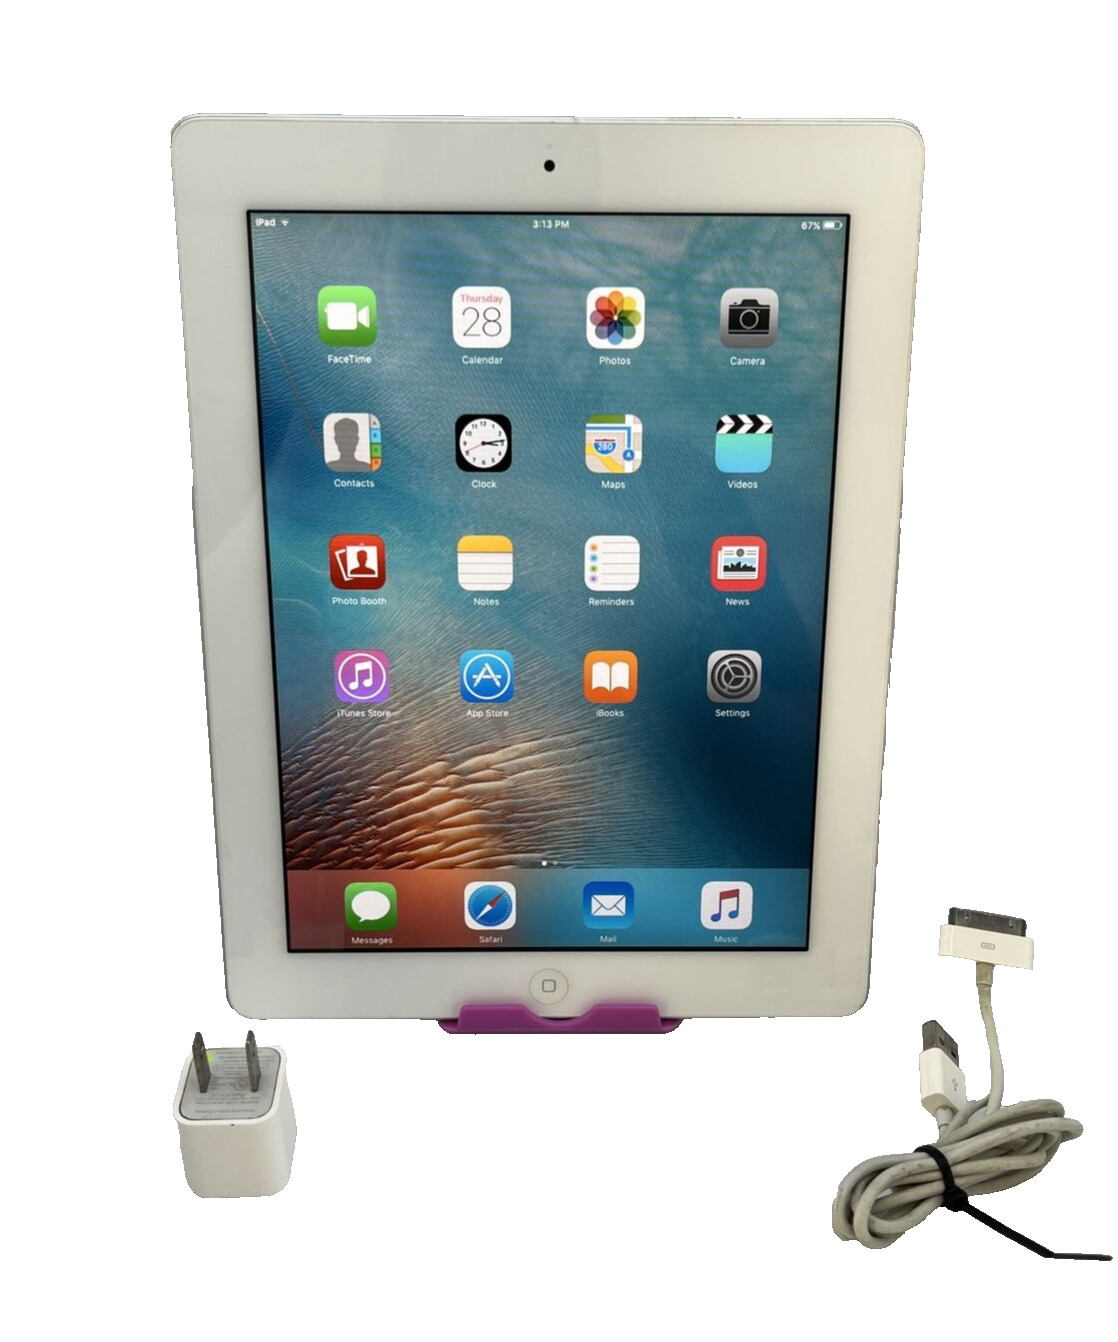 Apple iPad 2 16GB, Wi-F  (AT&T), 9.7in - White - Good Shape W/CHGR 🔌⚡